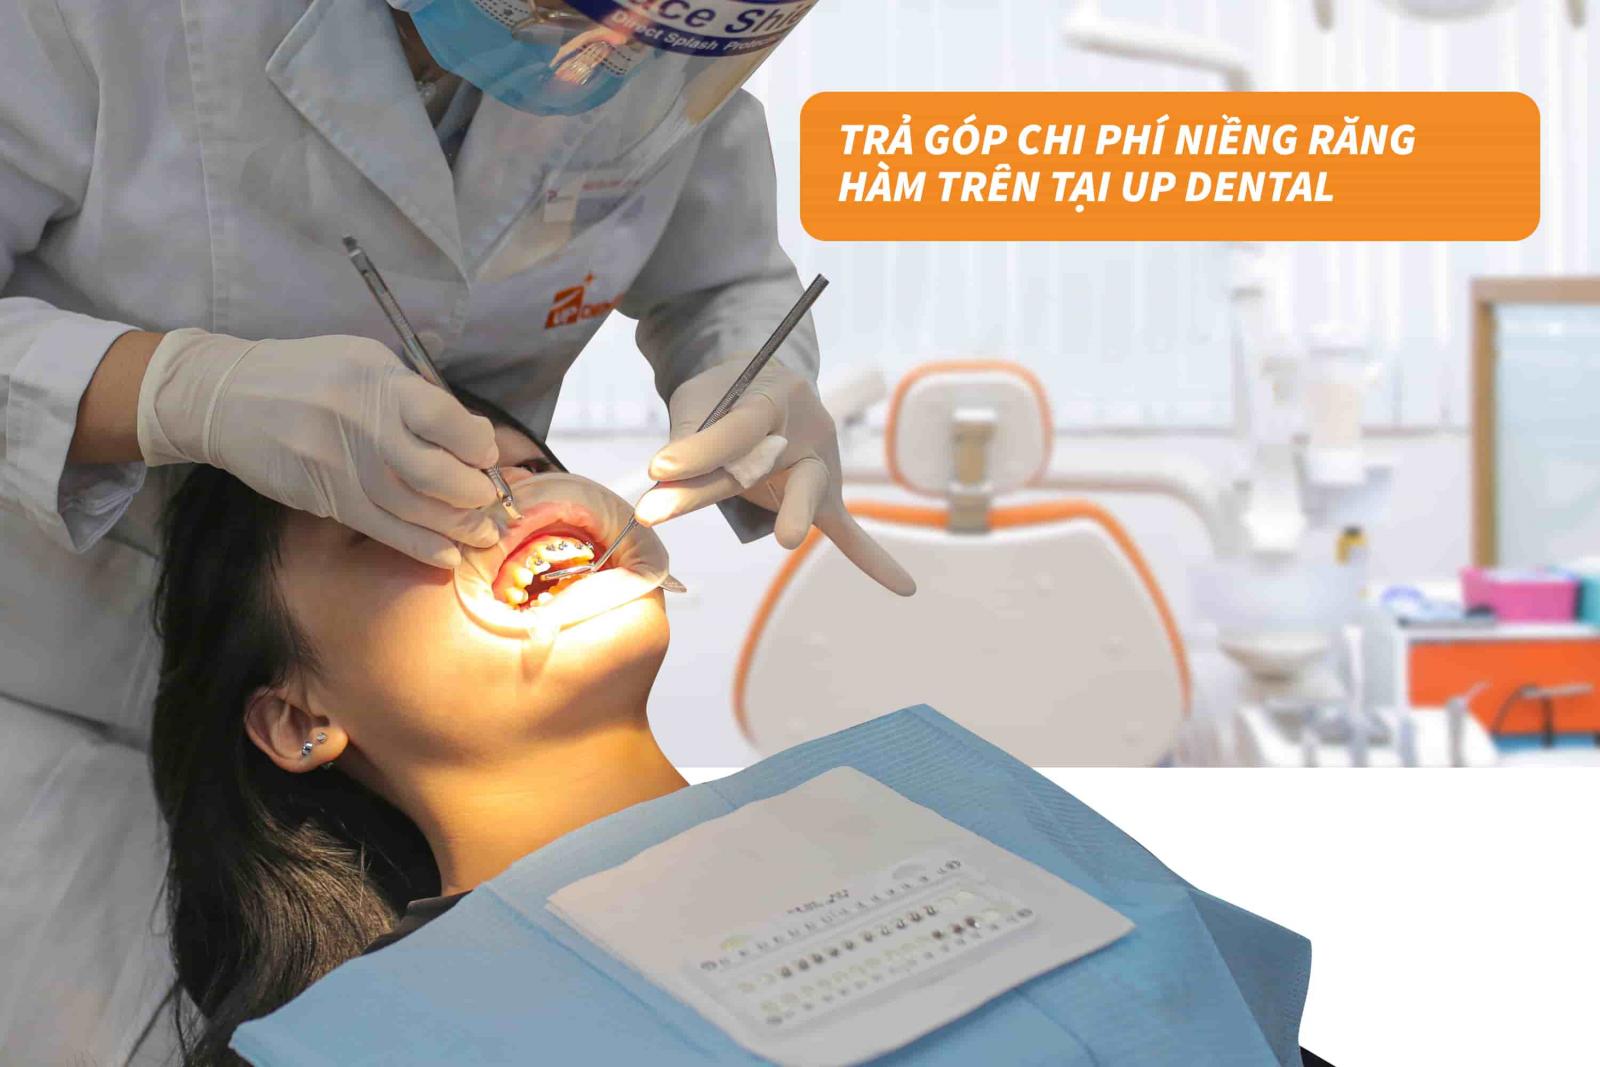 Trả góp chi phí niềng răng hàm trên tại Up Dental